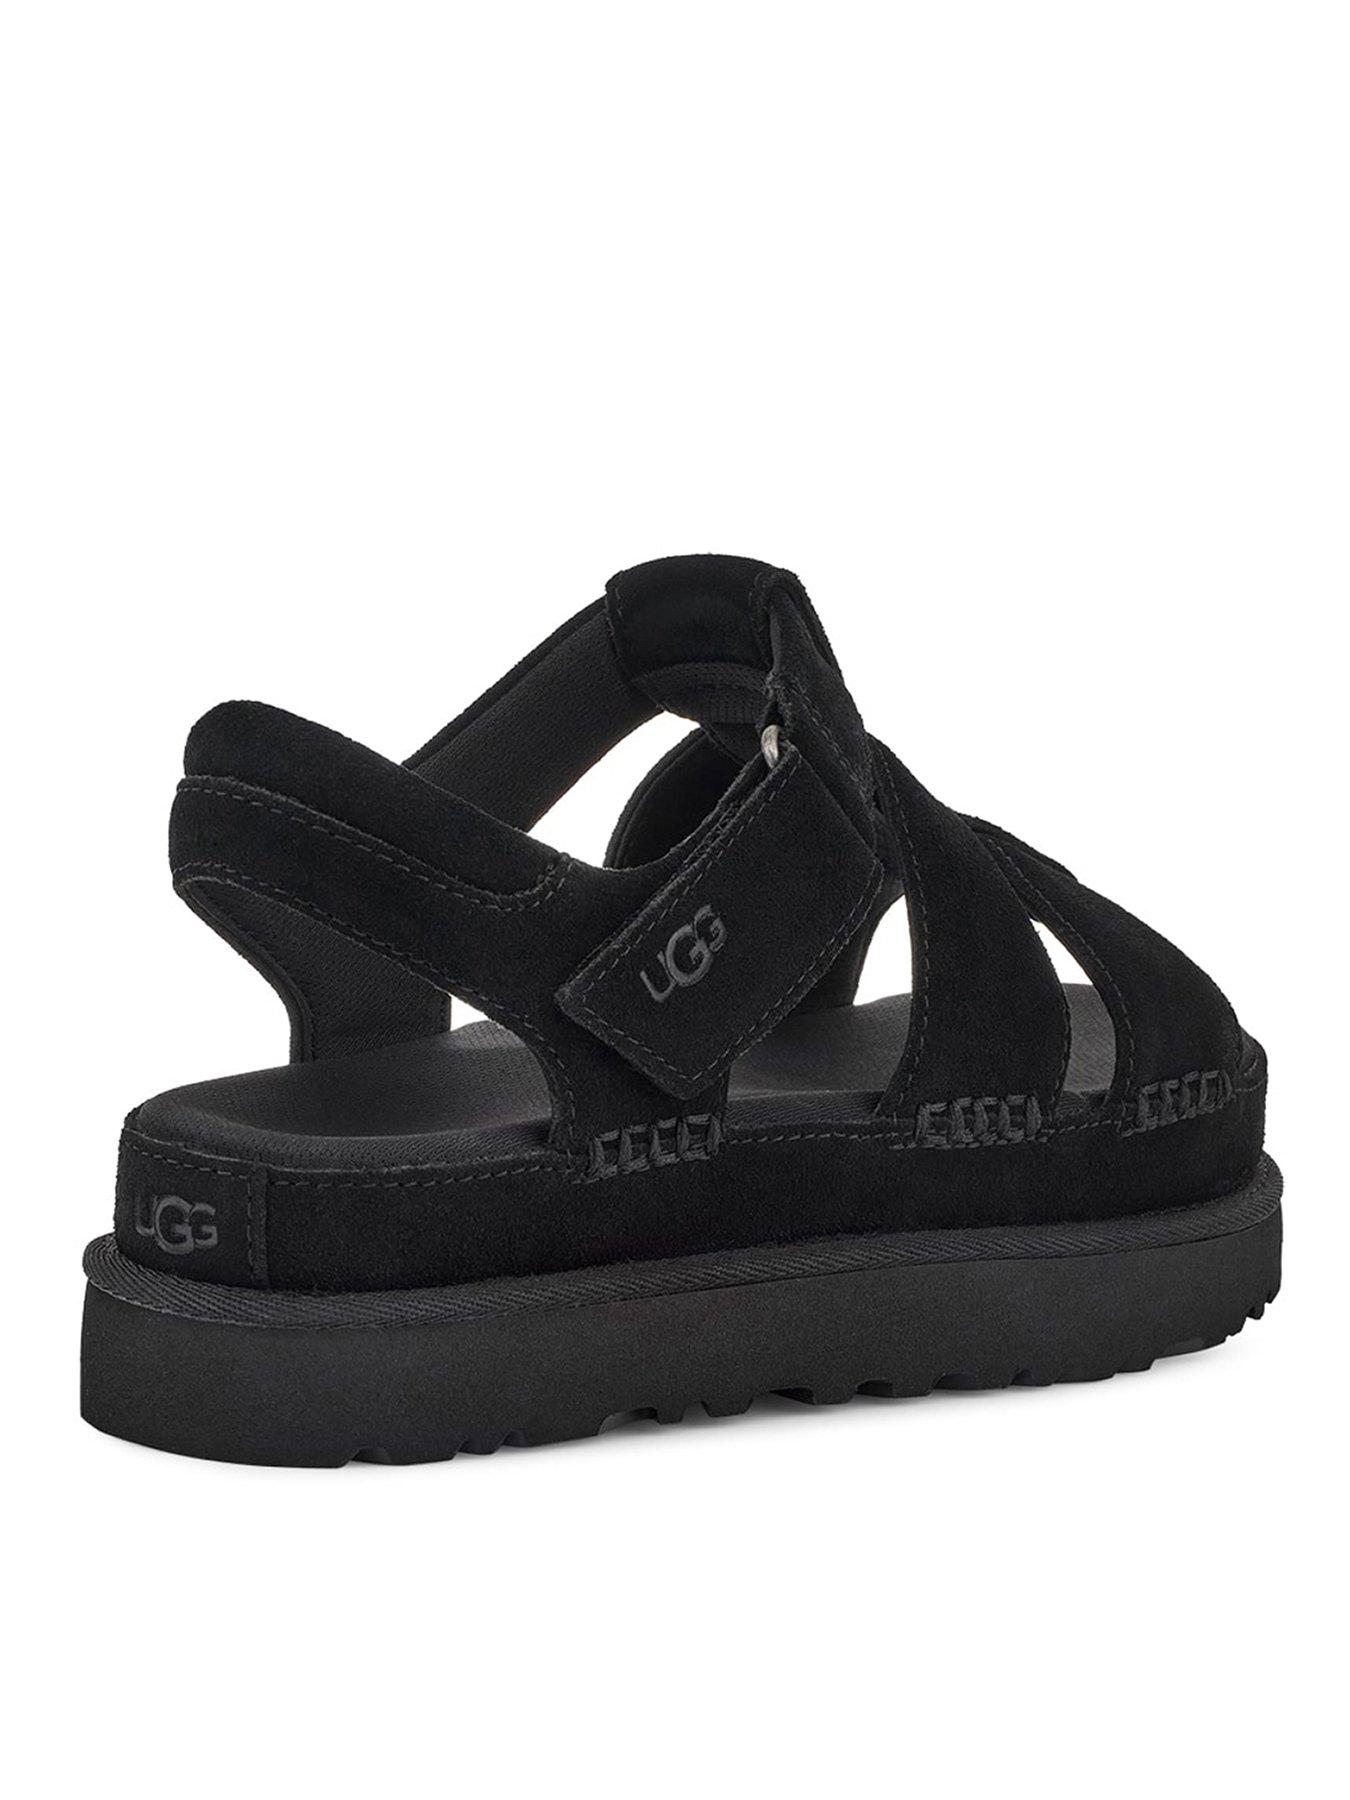 UGG Ugg Goldenstar Strap Wedge Sandals - Black | very.co.uk